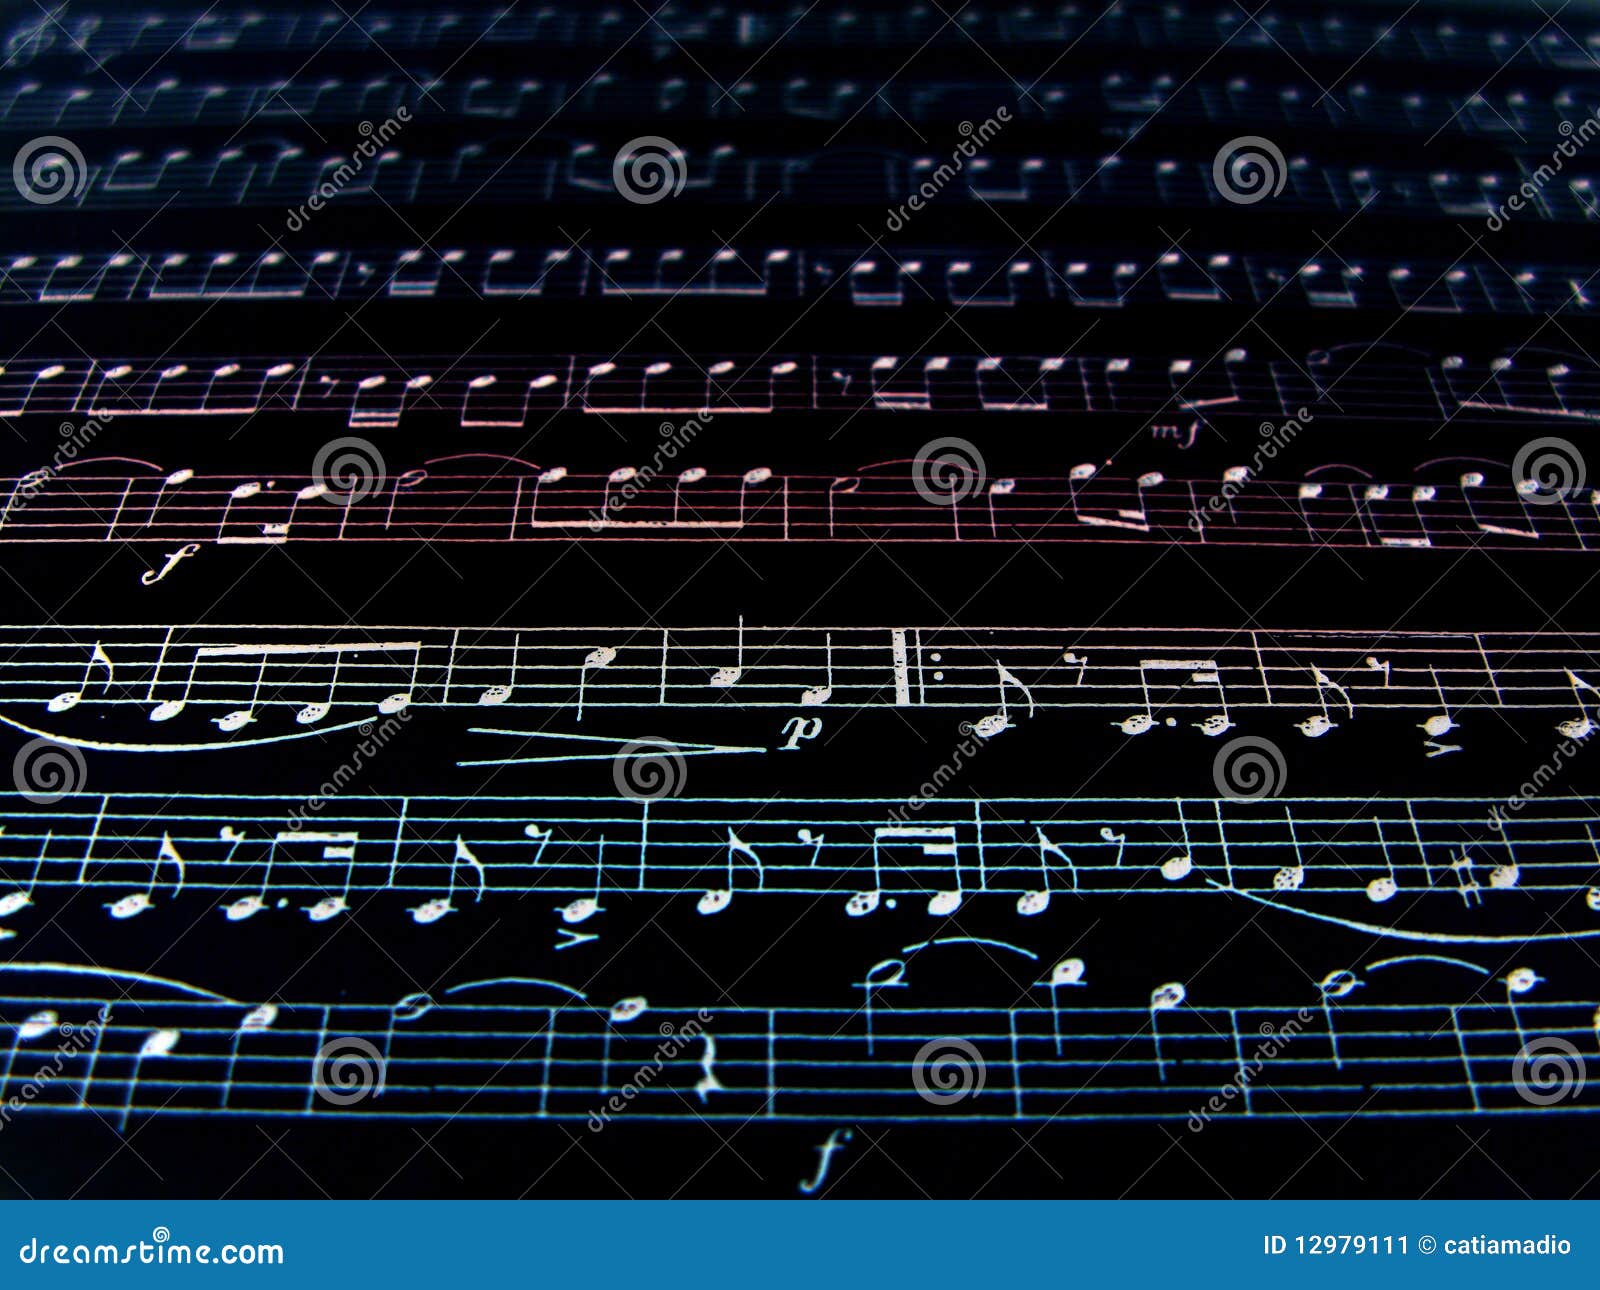 Music Notes Background Stock Image  Image: 12979111